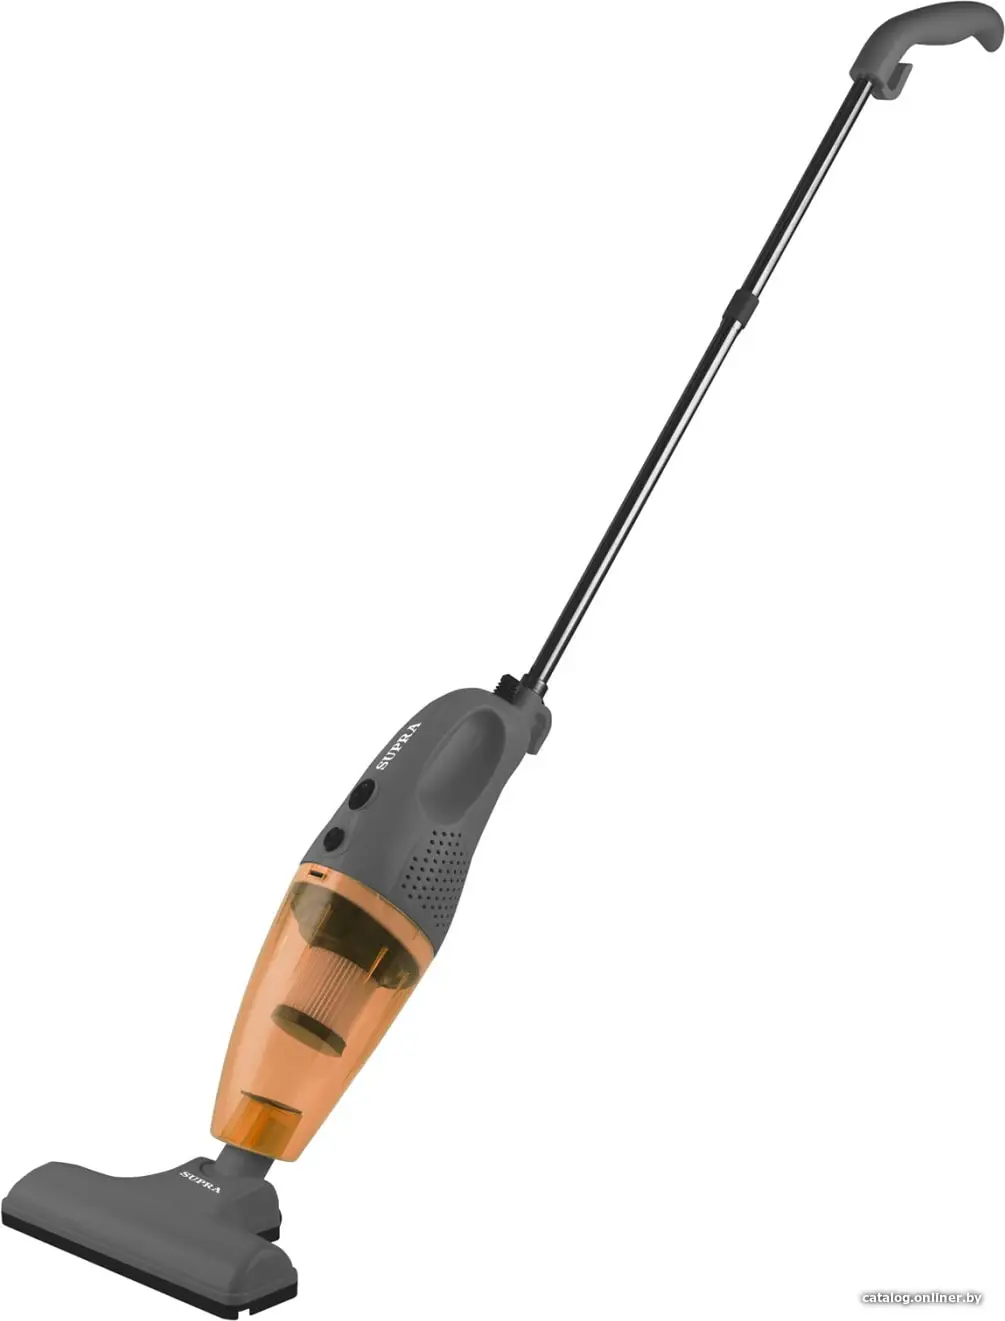 Купить Пылесос Supra VCS-4090 серый/оранжевый, цена, опт и розница